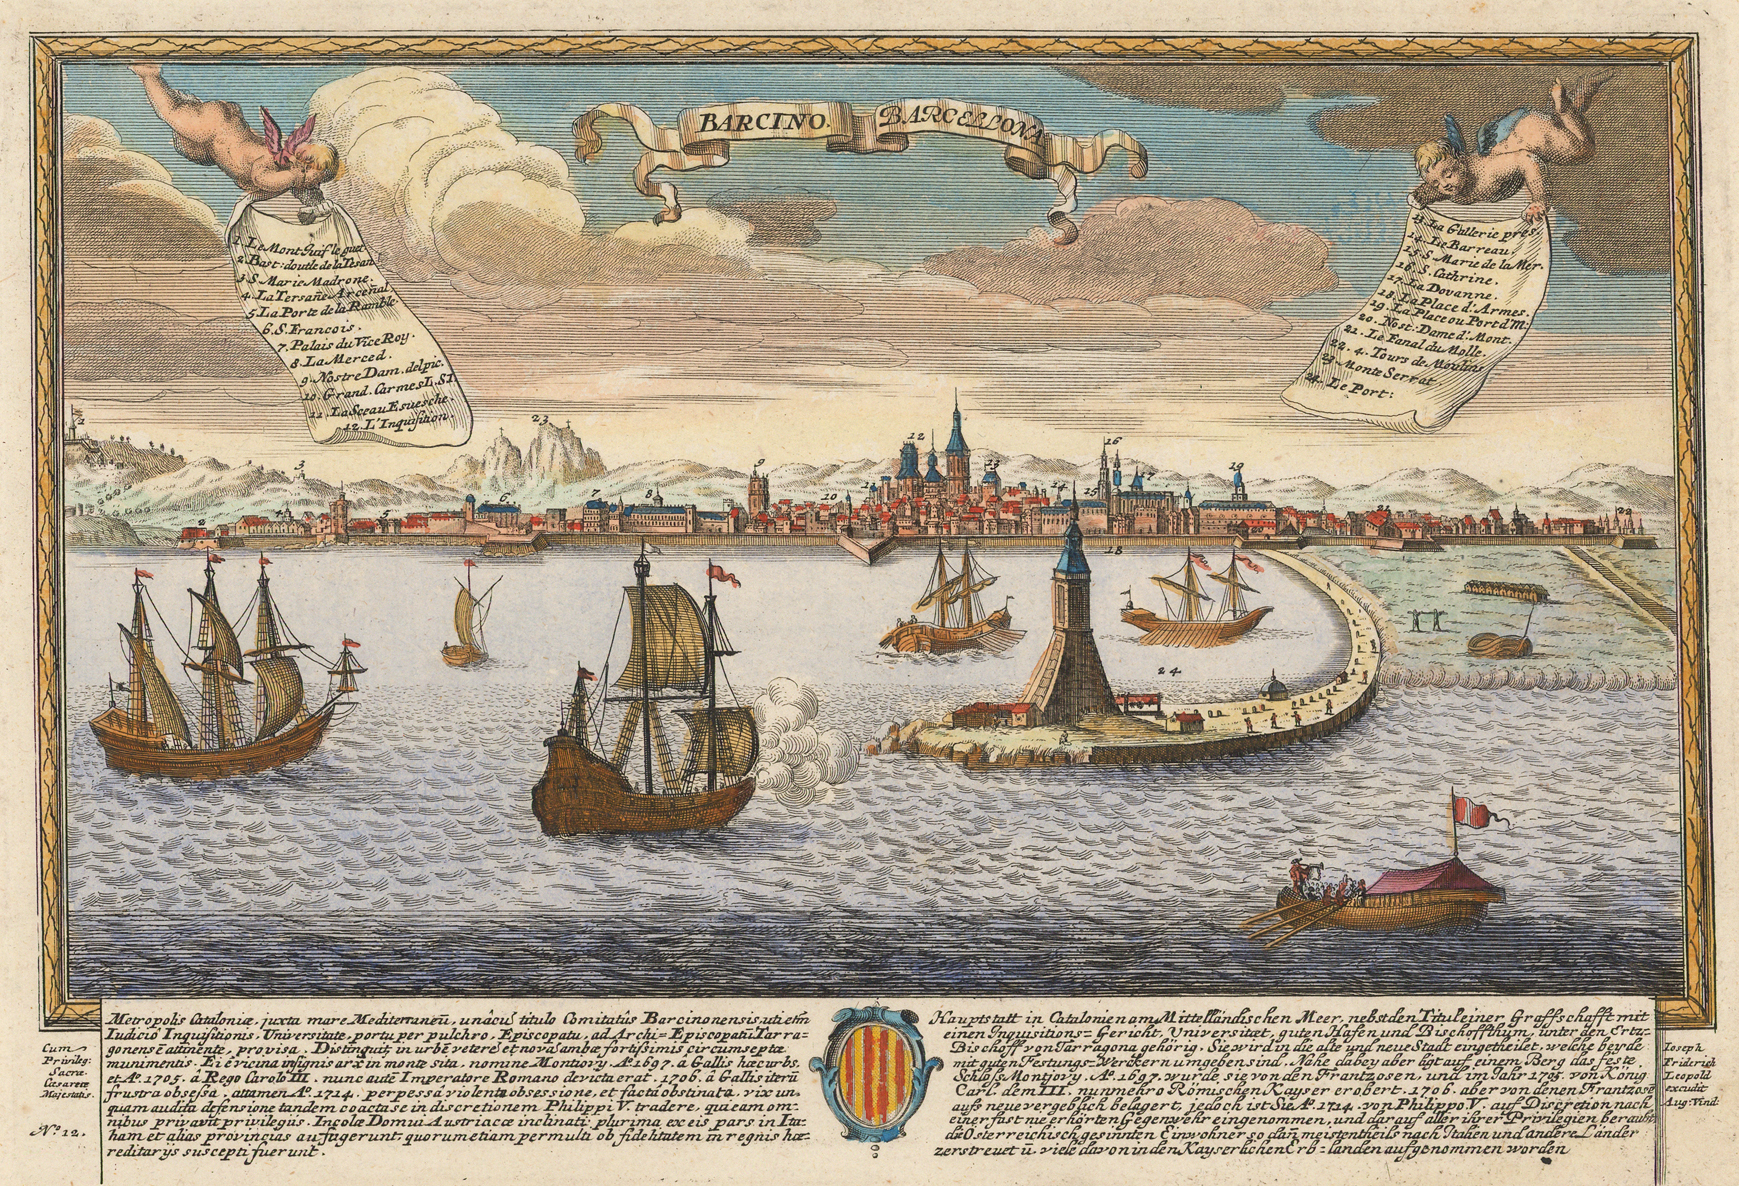 Carles d’Habsburg ratifica la creació de la Casa del Port Franc de Barcelona